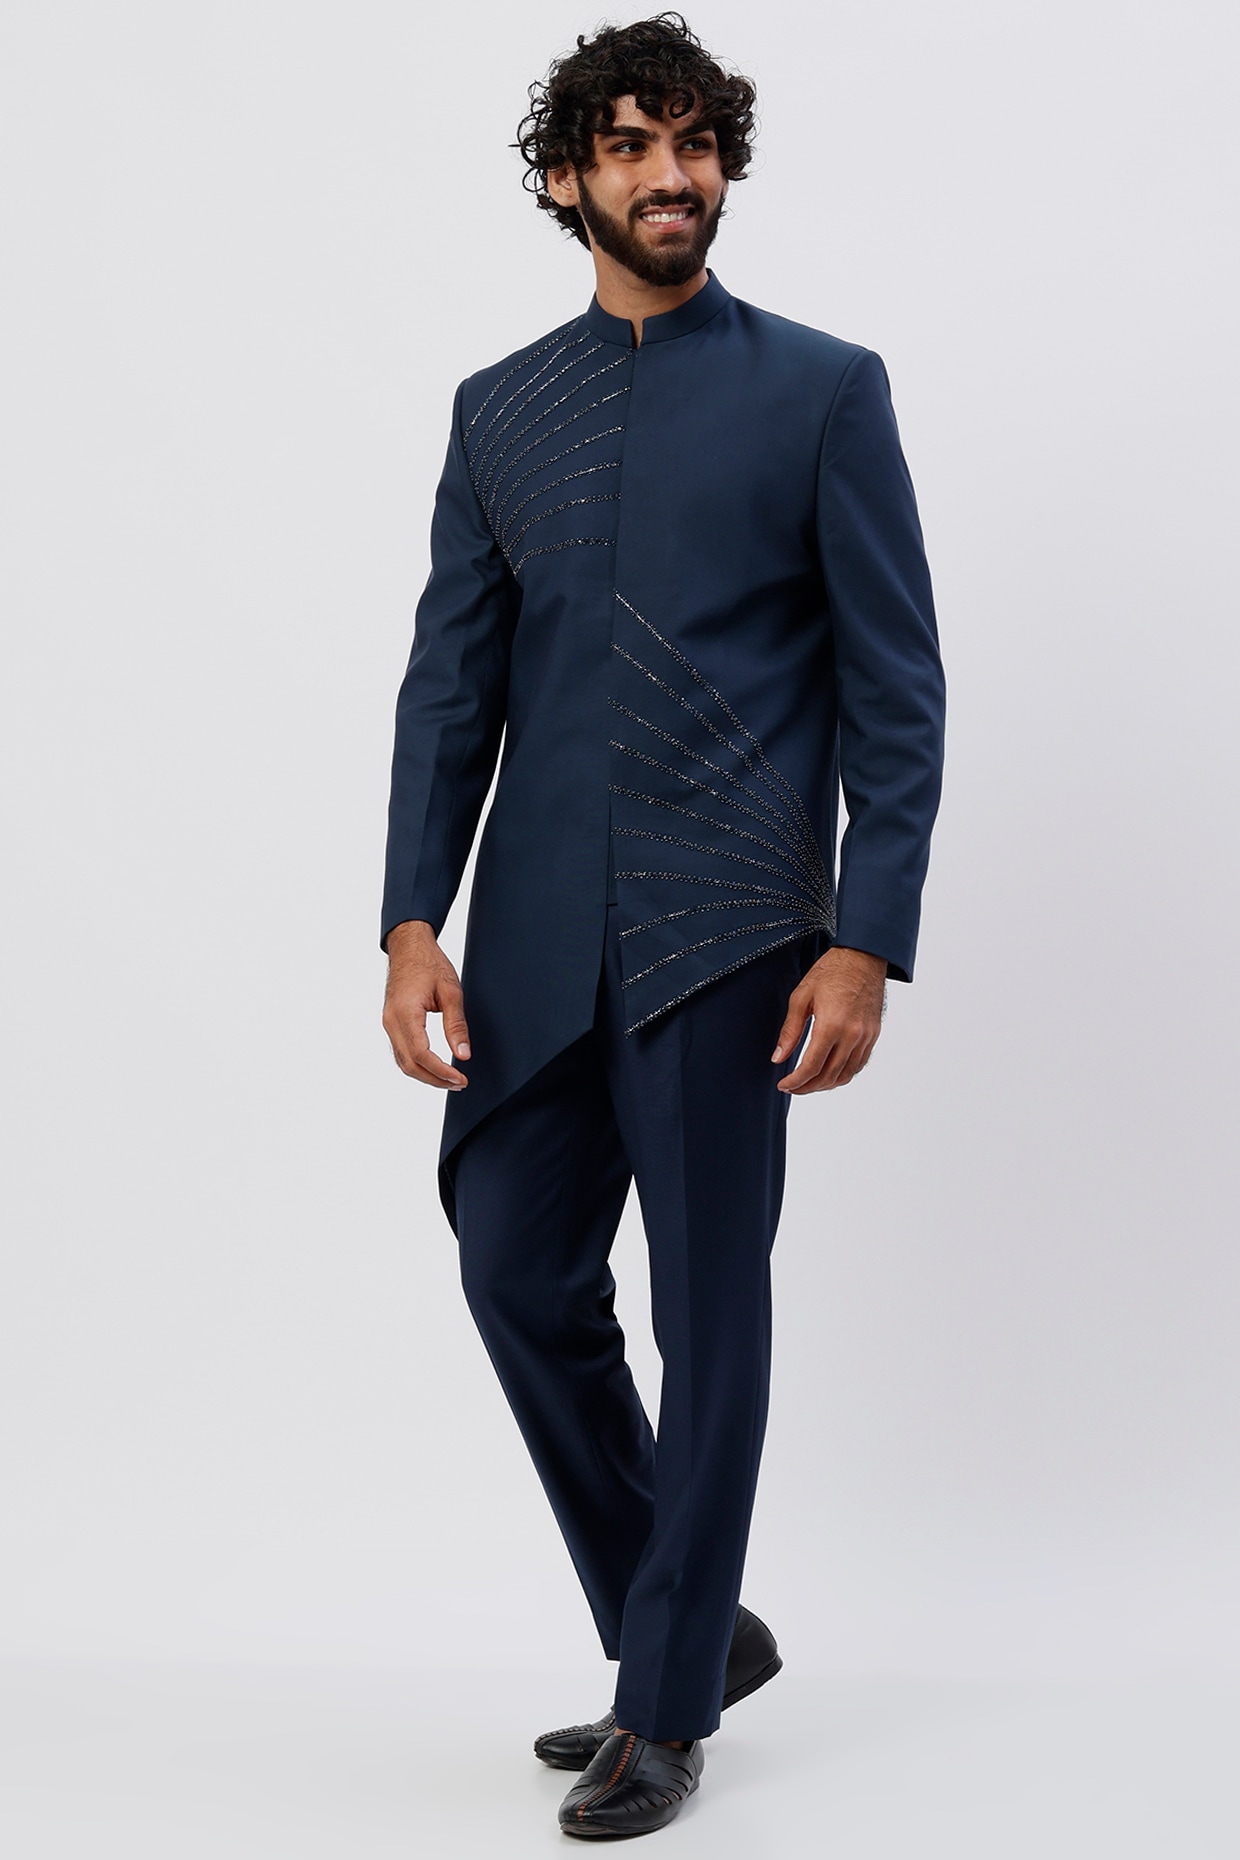 Buy Diwan Saheb Designer Suit (DF-1257, S) Online - Best Price Diwan Saheb Designer  Suit (DF-1257, S) - Justdial Shop Online.